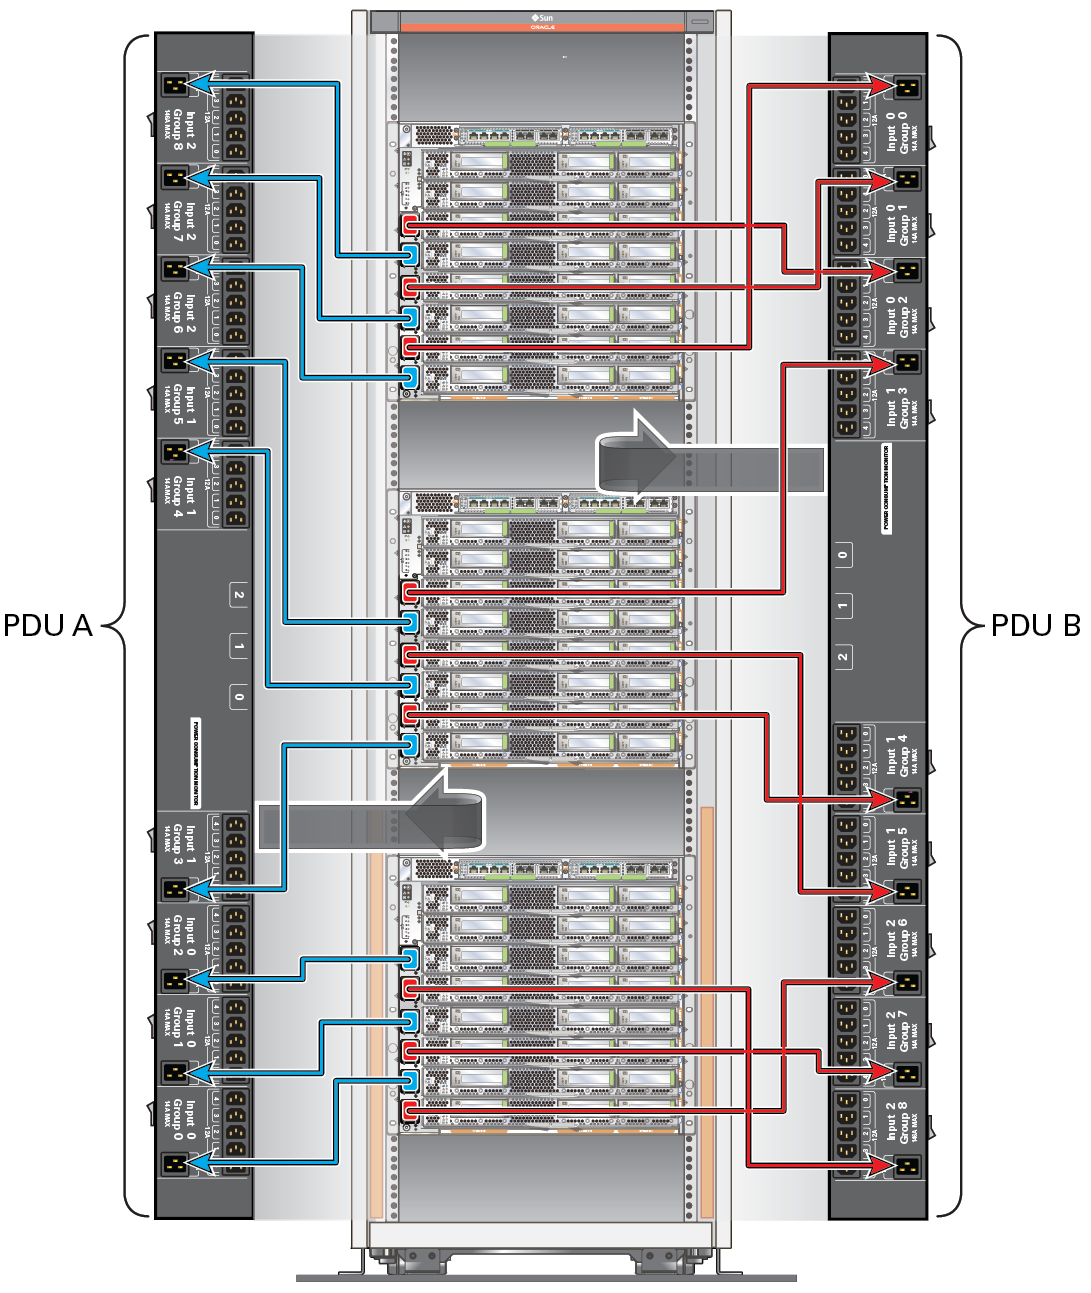 image:Figure présentant la relation cordon d'alimentation-PDU entre les alimentations du serveur SPARC M7-8 et les PDU.